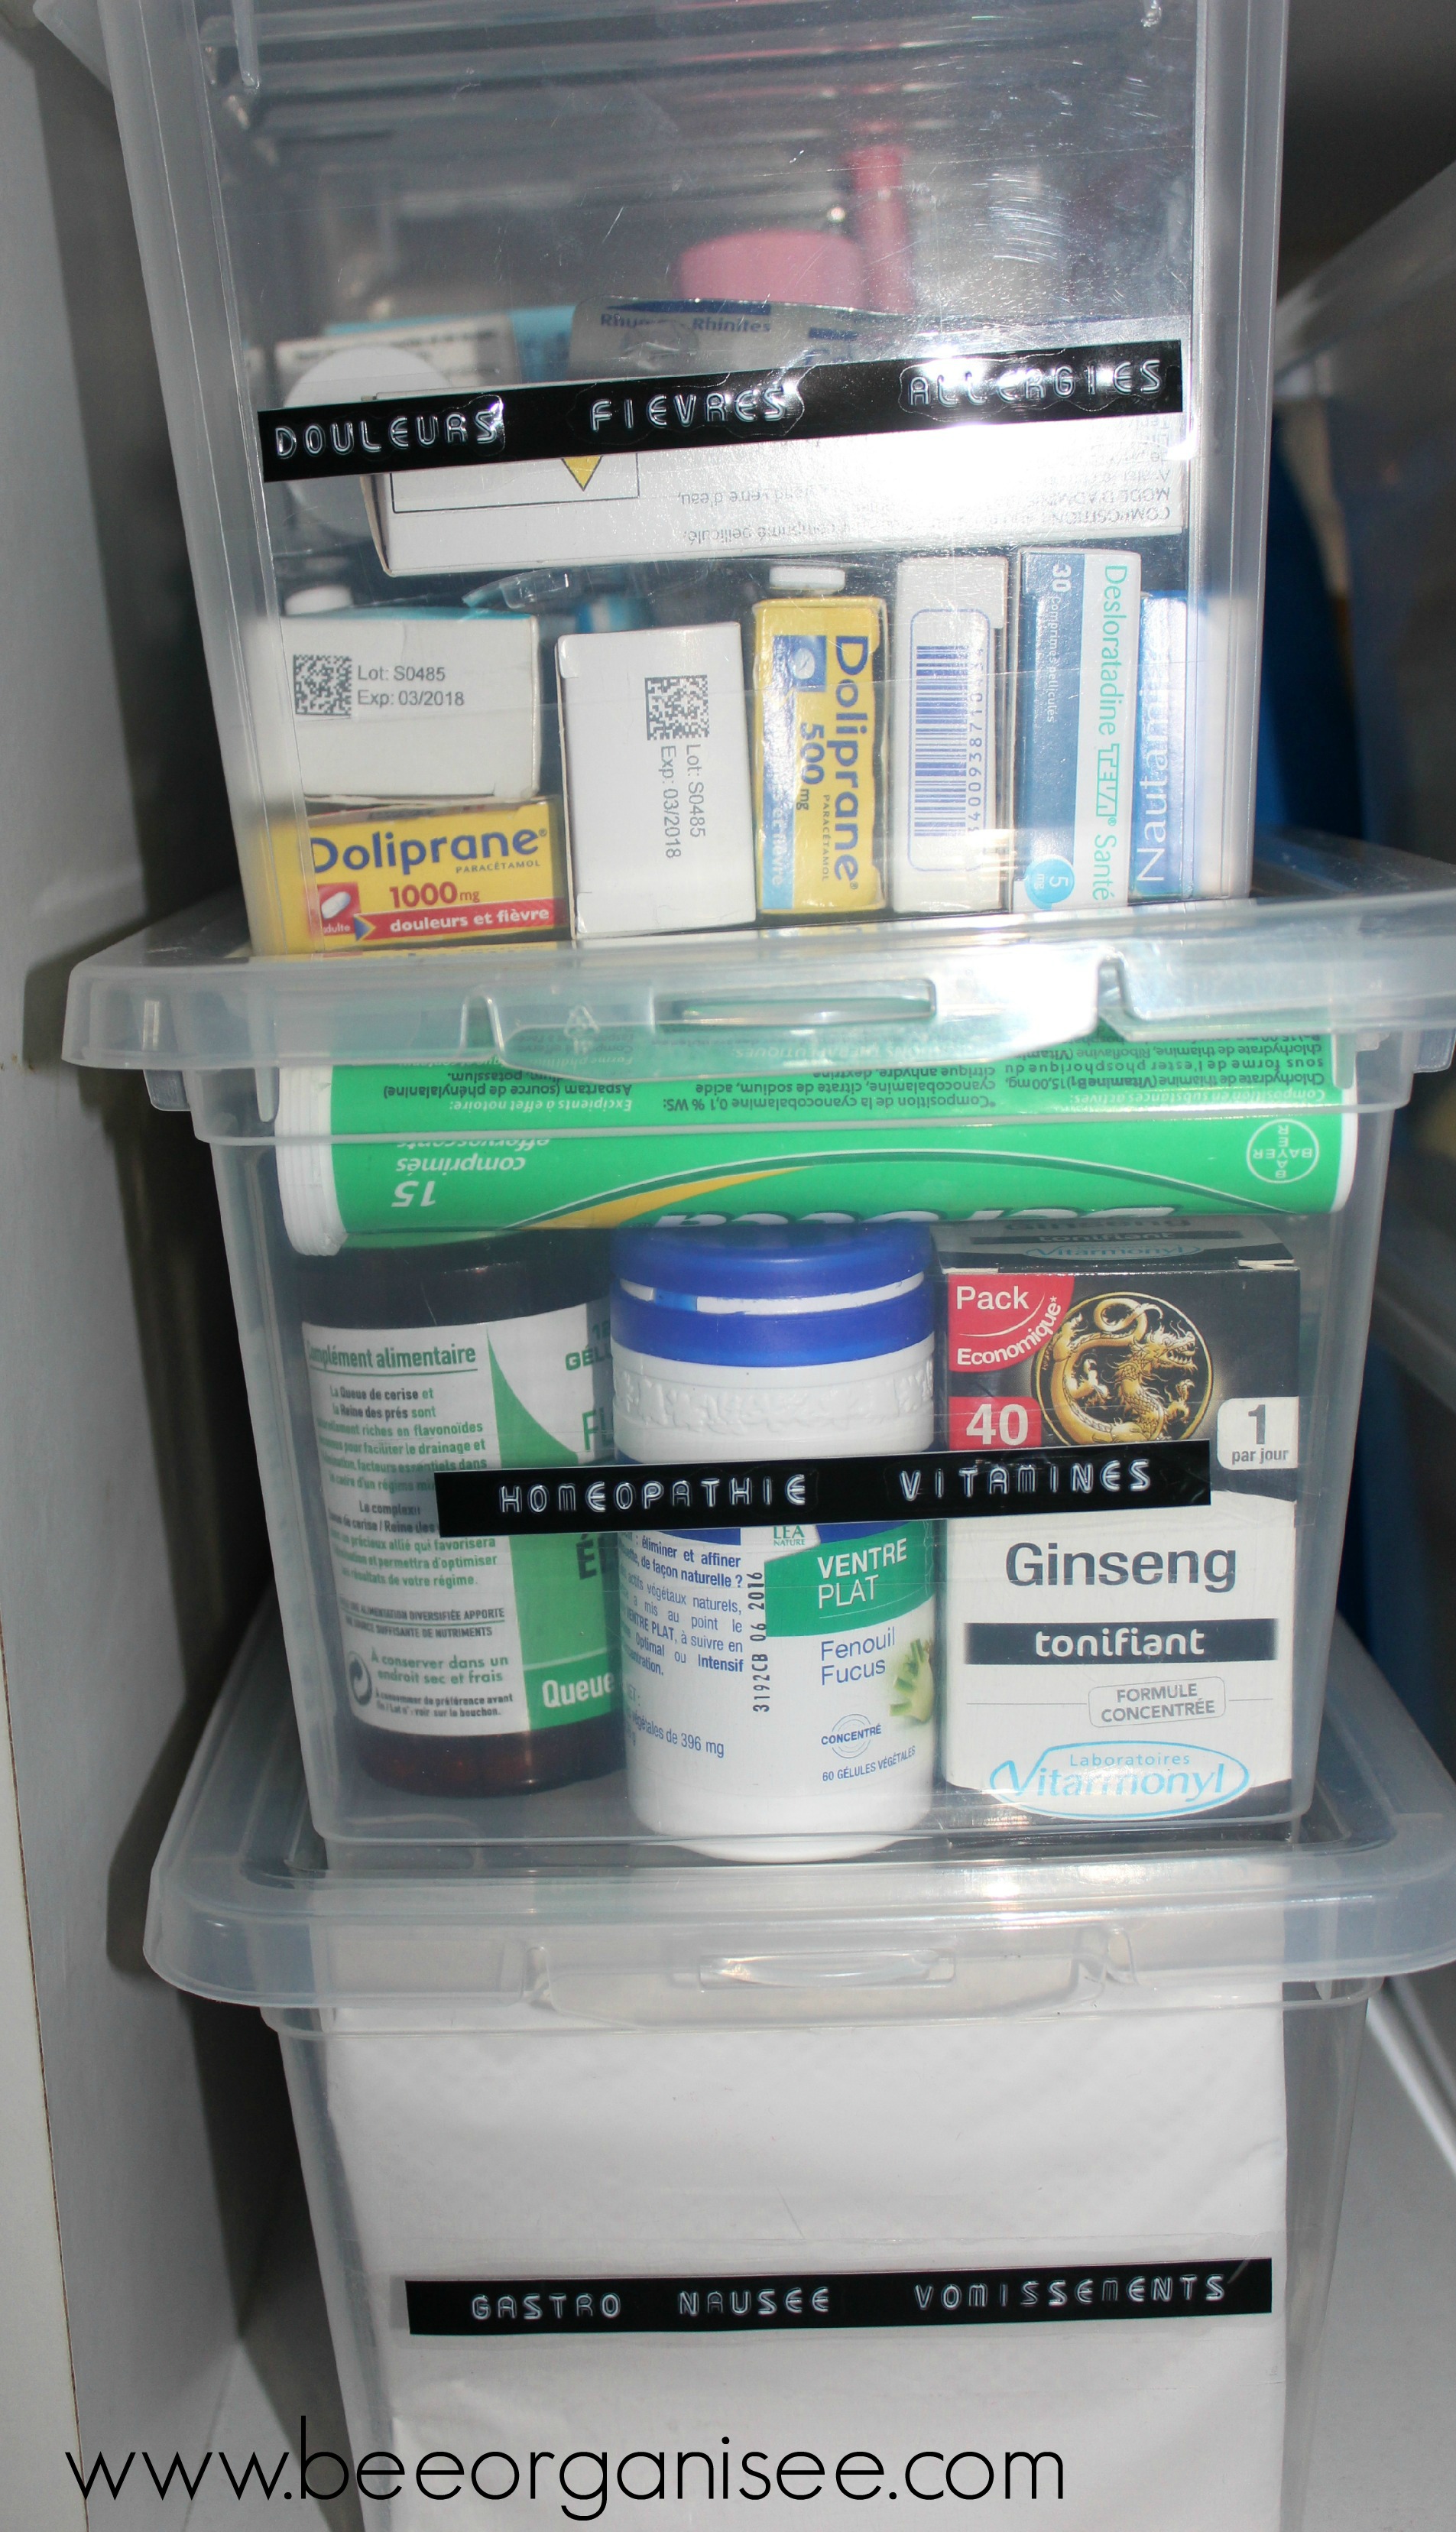 Les médicaments sont rangés par catégories, dans des boîtes